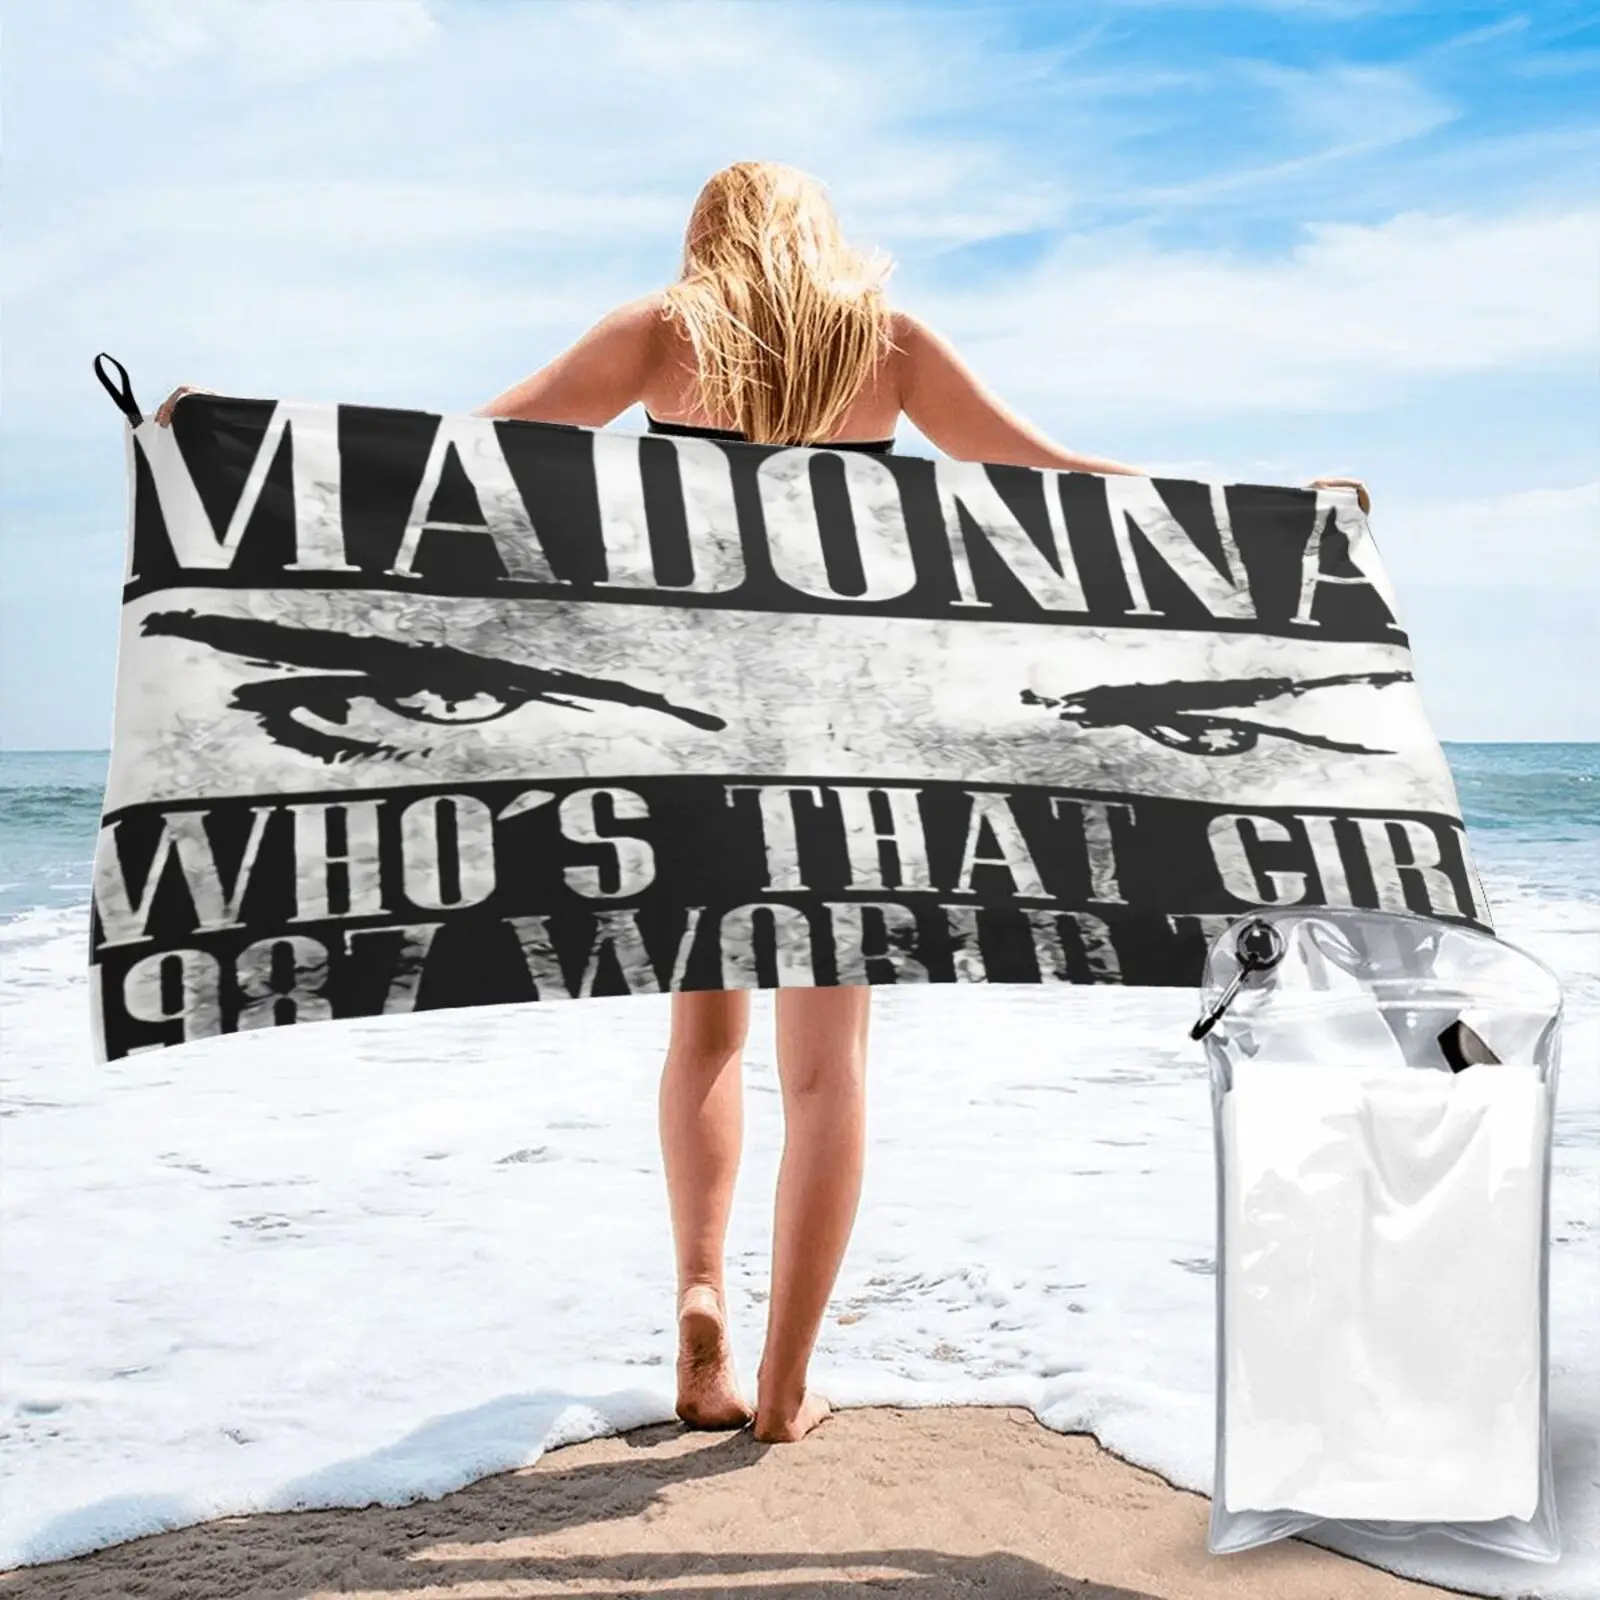 

Мадонна Whos That 87 World Tour, пляжное полотенце, банное полотенце, Товары для ванной, пляжный коврик, махровое полотенце для пляжа, пляжное одеяло